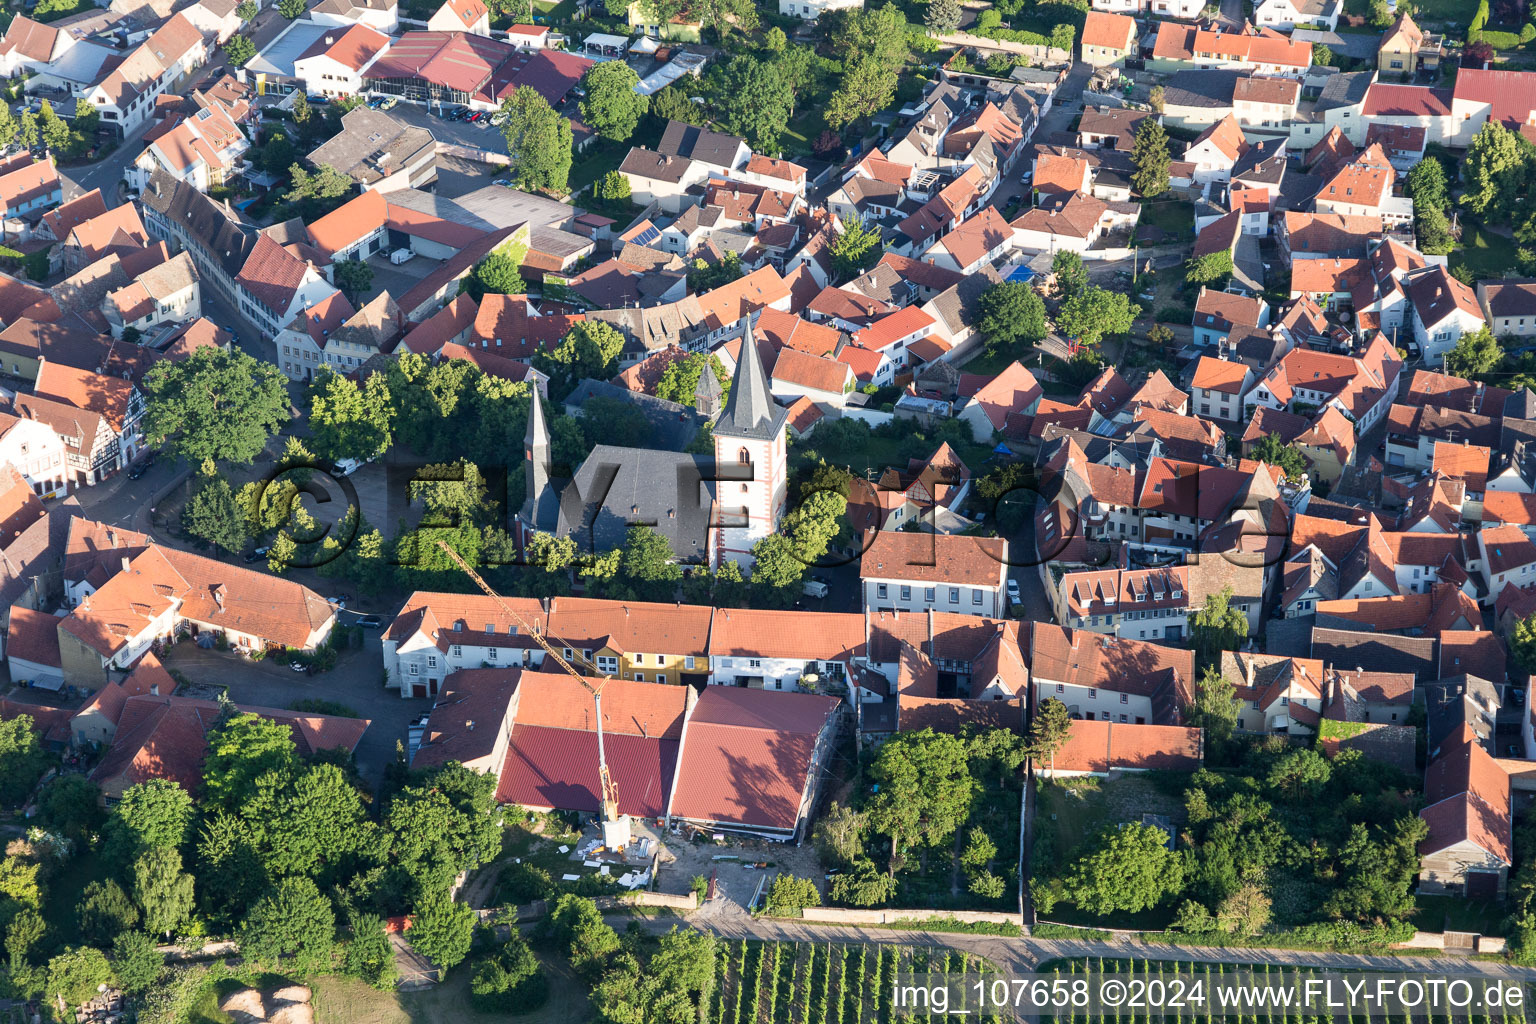 Vue aérienne de Bâtiment de l'église Saint-Pierre et Paul au centre du village à Westhofen dans le département Rhénanie-Palatinat, Allemagne